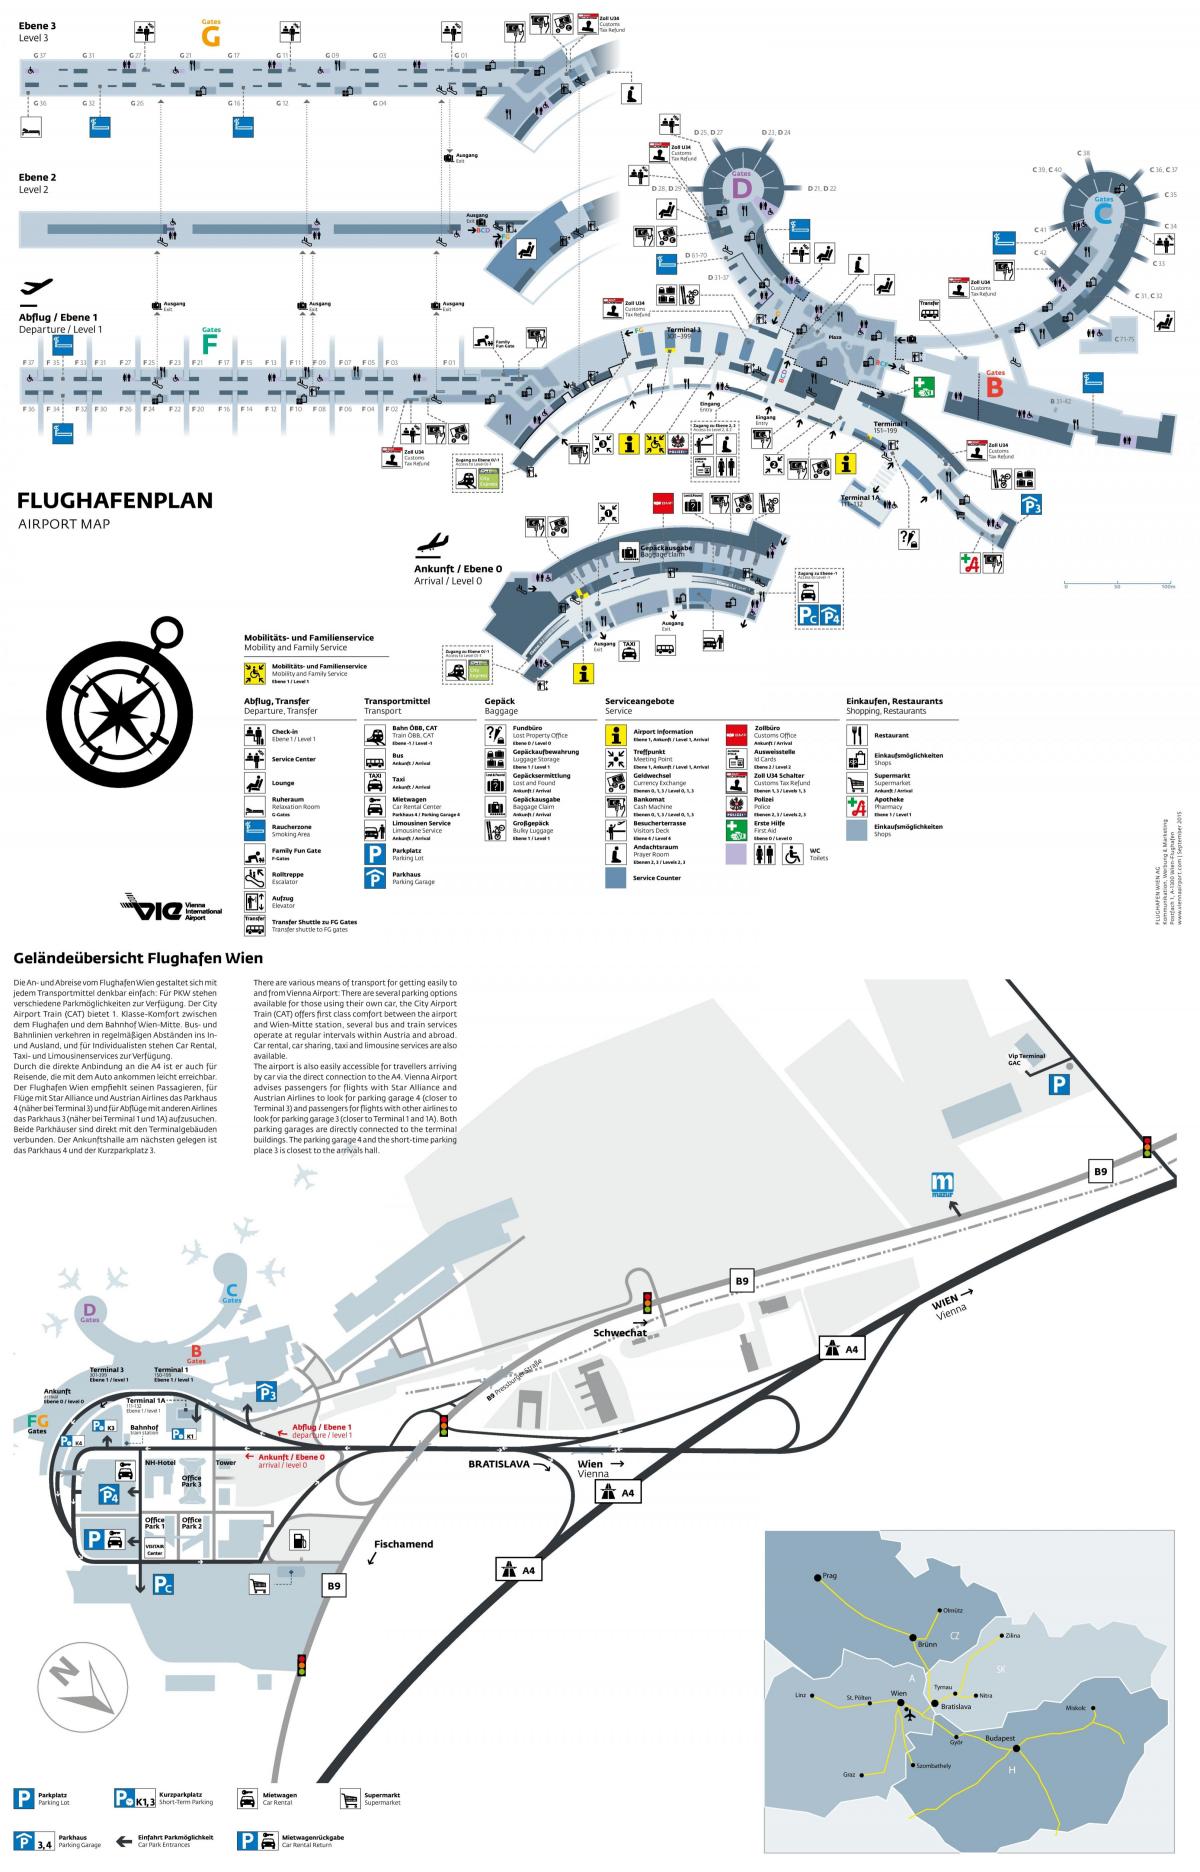 ვენის აეროპორტში departures რუკა